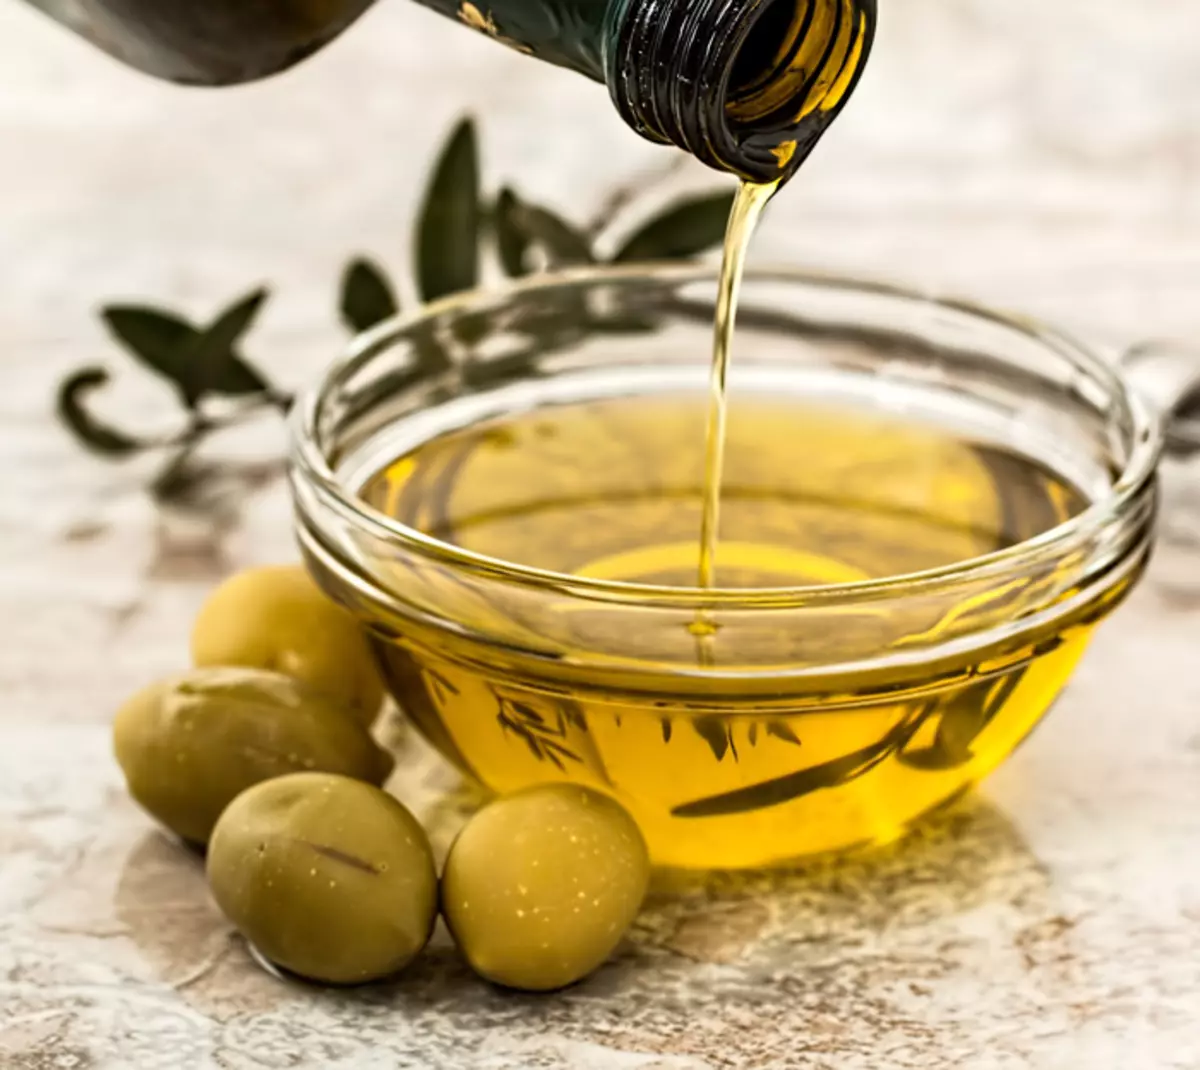 Oleo de olivo nutras kaj haŭto, kaj okulharoj